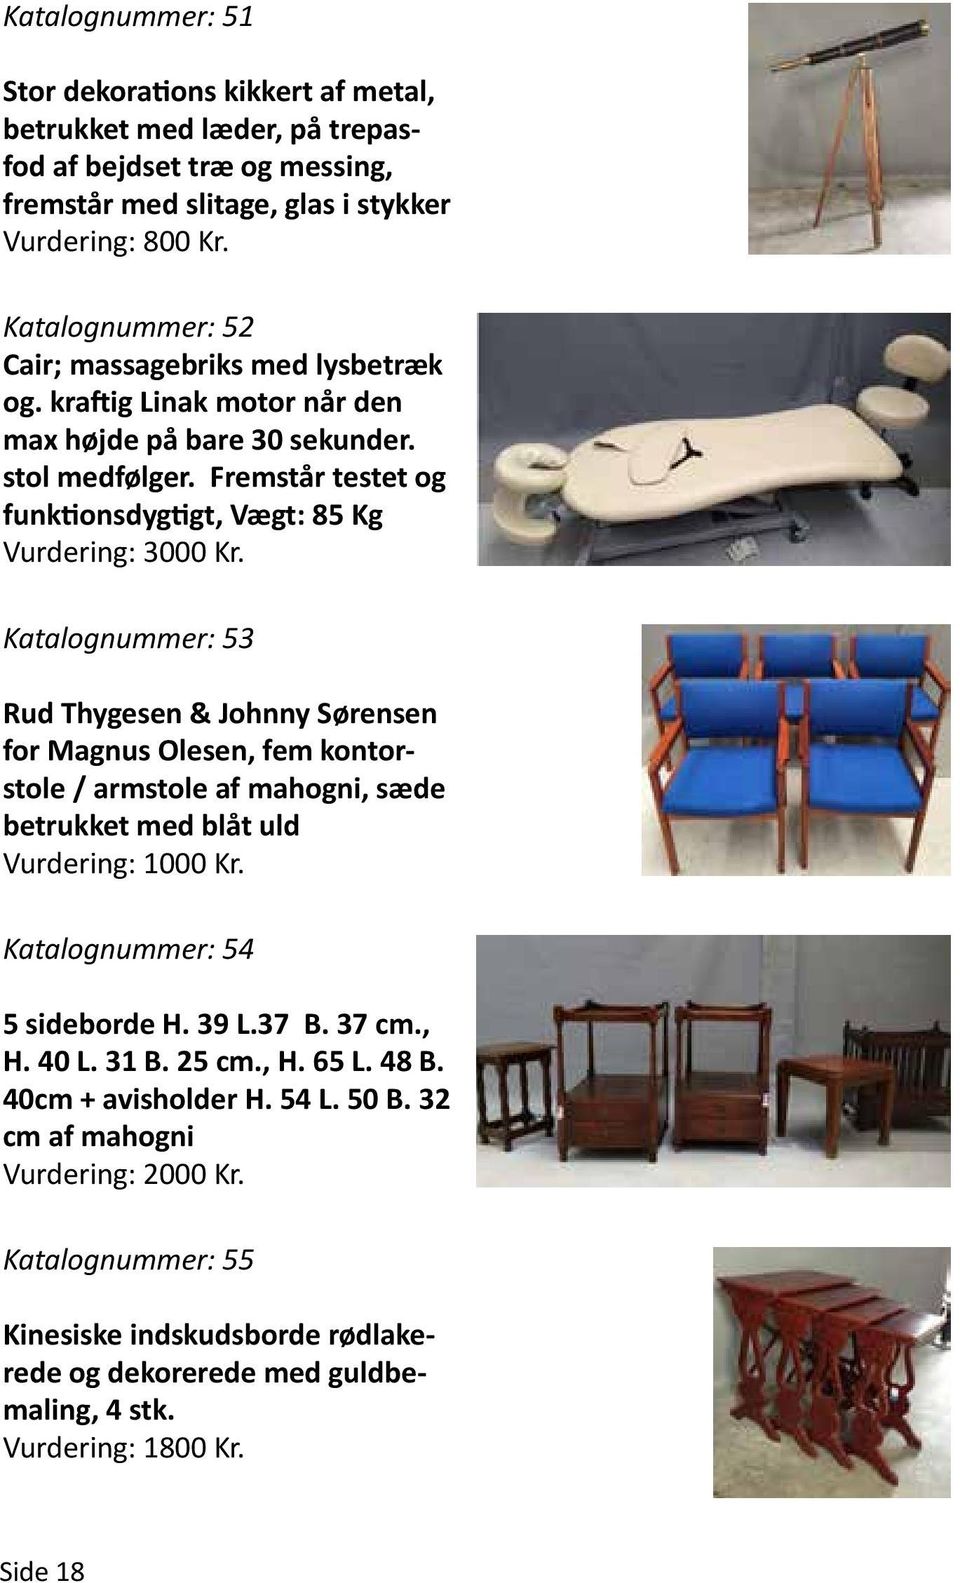 Katalognummer: 53 Rud Thygesen & Johnny Sørensen for Magnus Olesen, fem kontorstole / armstole af mahogni, sæde betrukket med blåt uld Katalognummer: 54 5 sideborde H. 39 L.37 B. 37 cm., H.